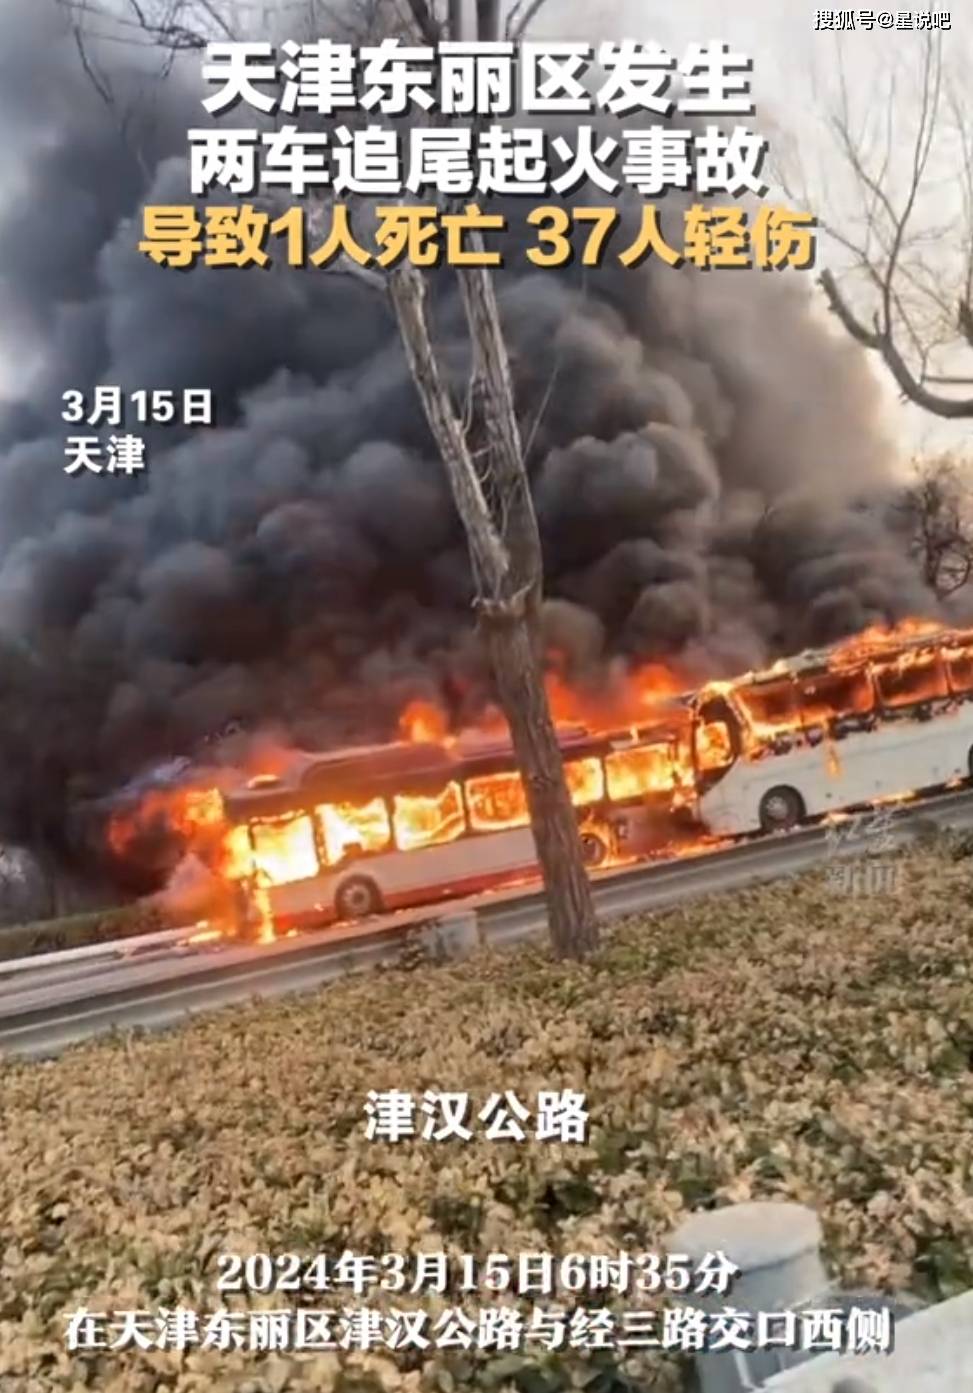 也就是3月15日的6:35,在天津东丽区,京汉公路与京三路交口西侧发生了